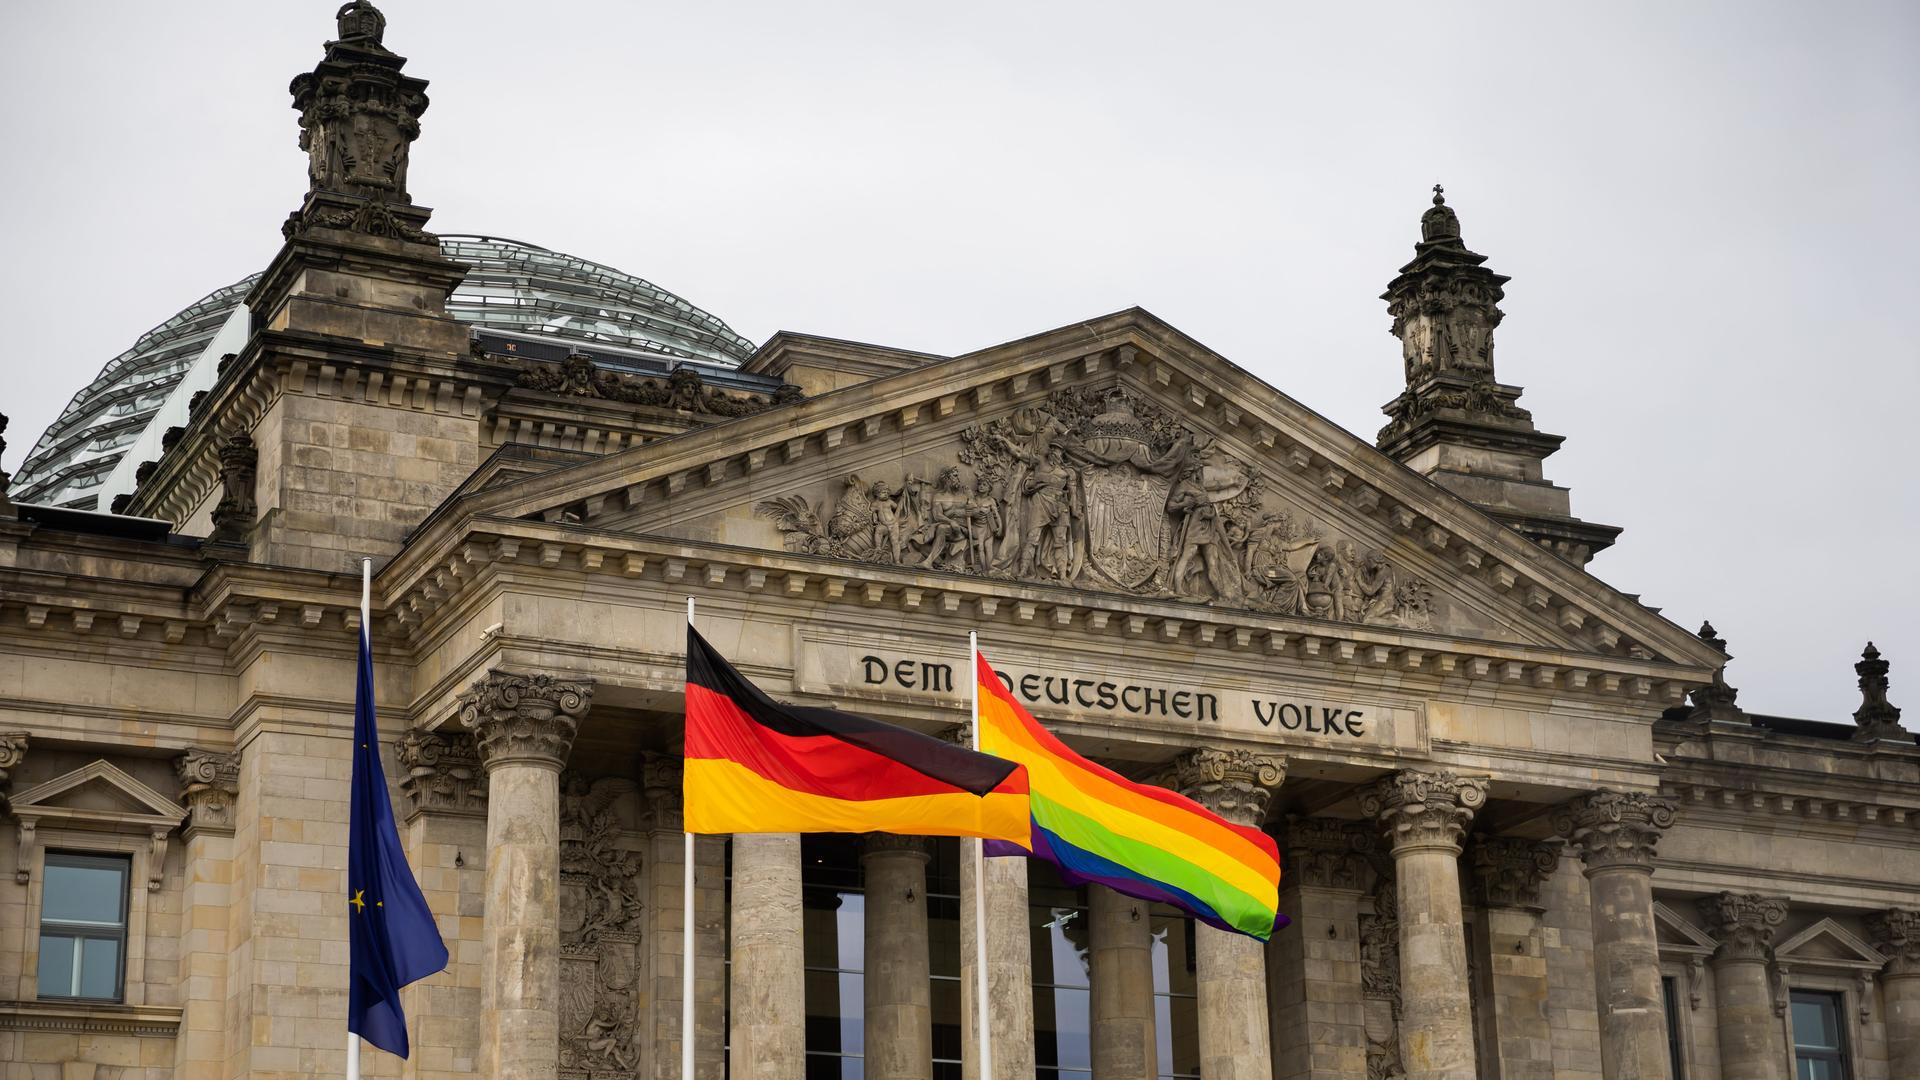 Die Regenbogenfahne weht anlässlich des Berliner Christopher Street Day (CSD) erstmals am Reichstagsgebäude.